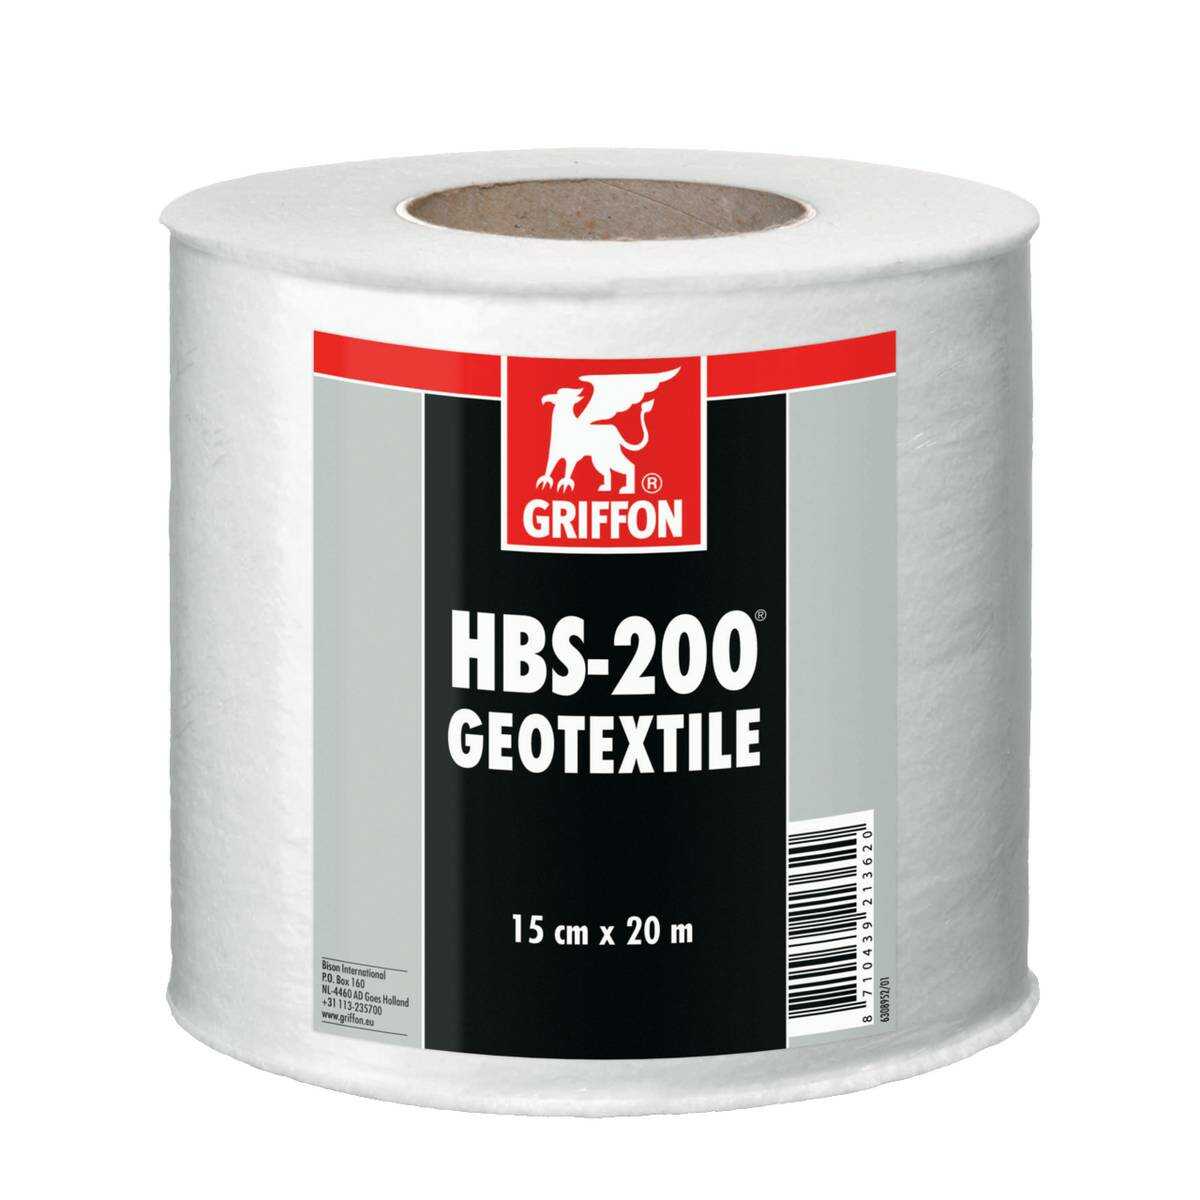 HBS-200 GÉOTEXTILE 15 CM X 20 M TOILE ÉLASTIQUE DE RENFORT